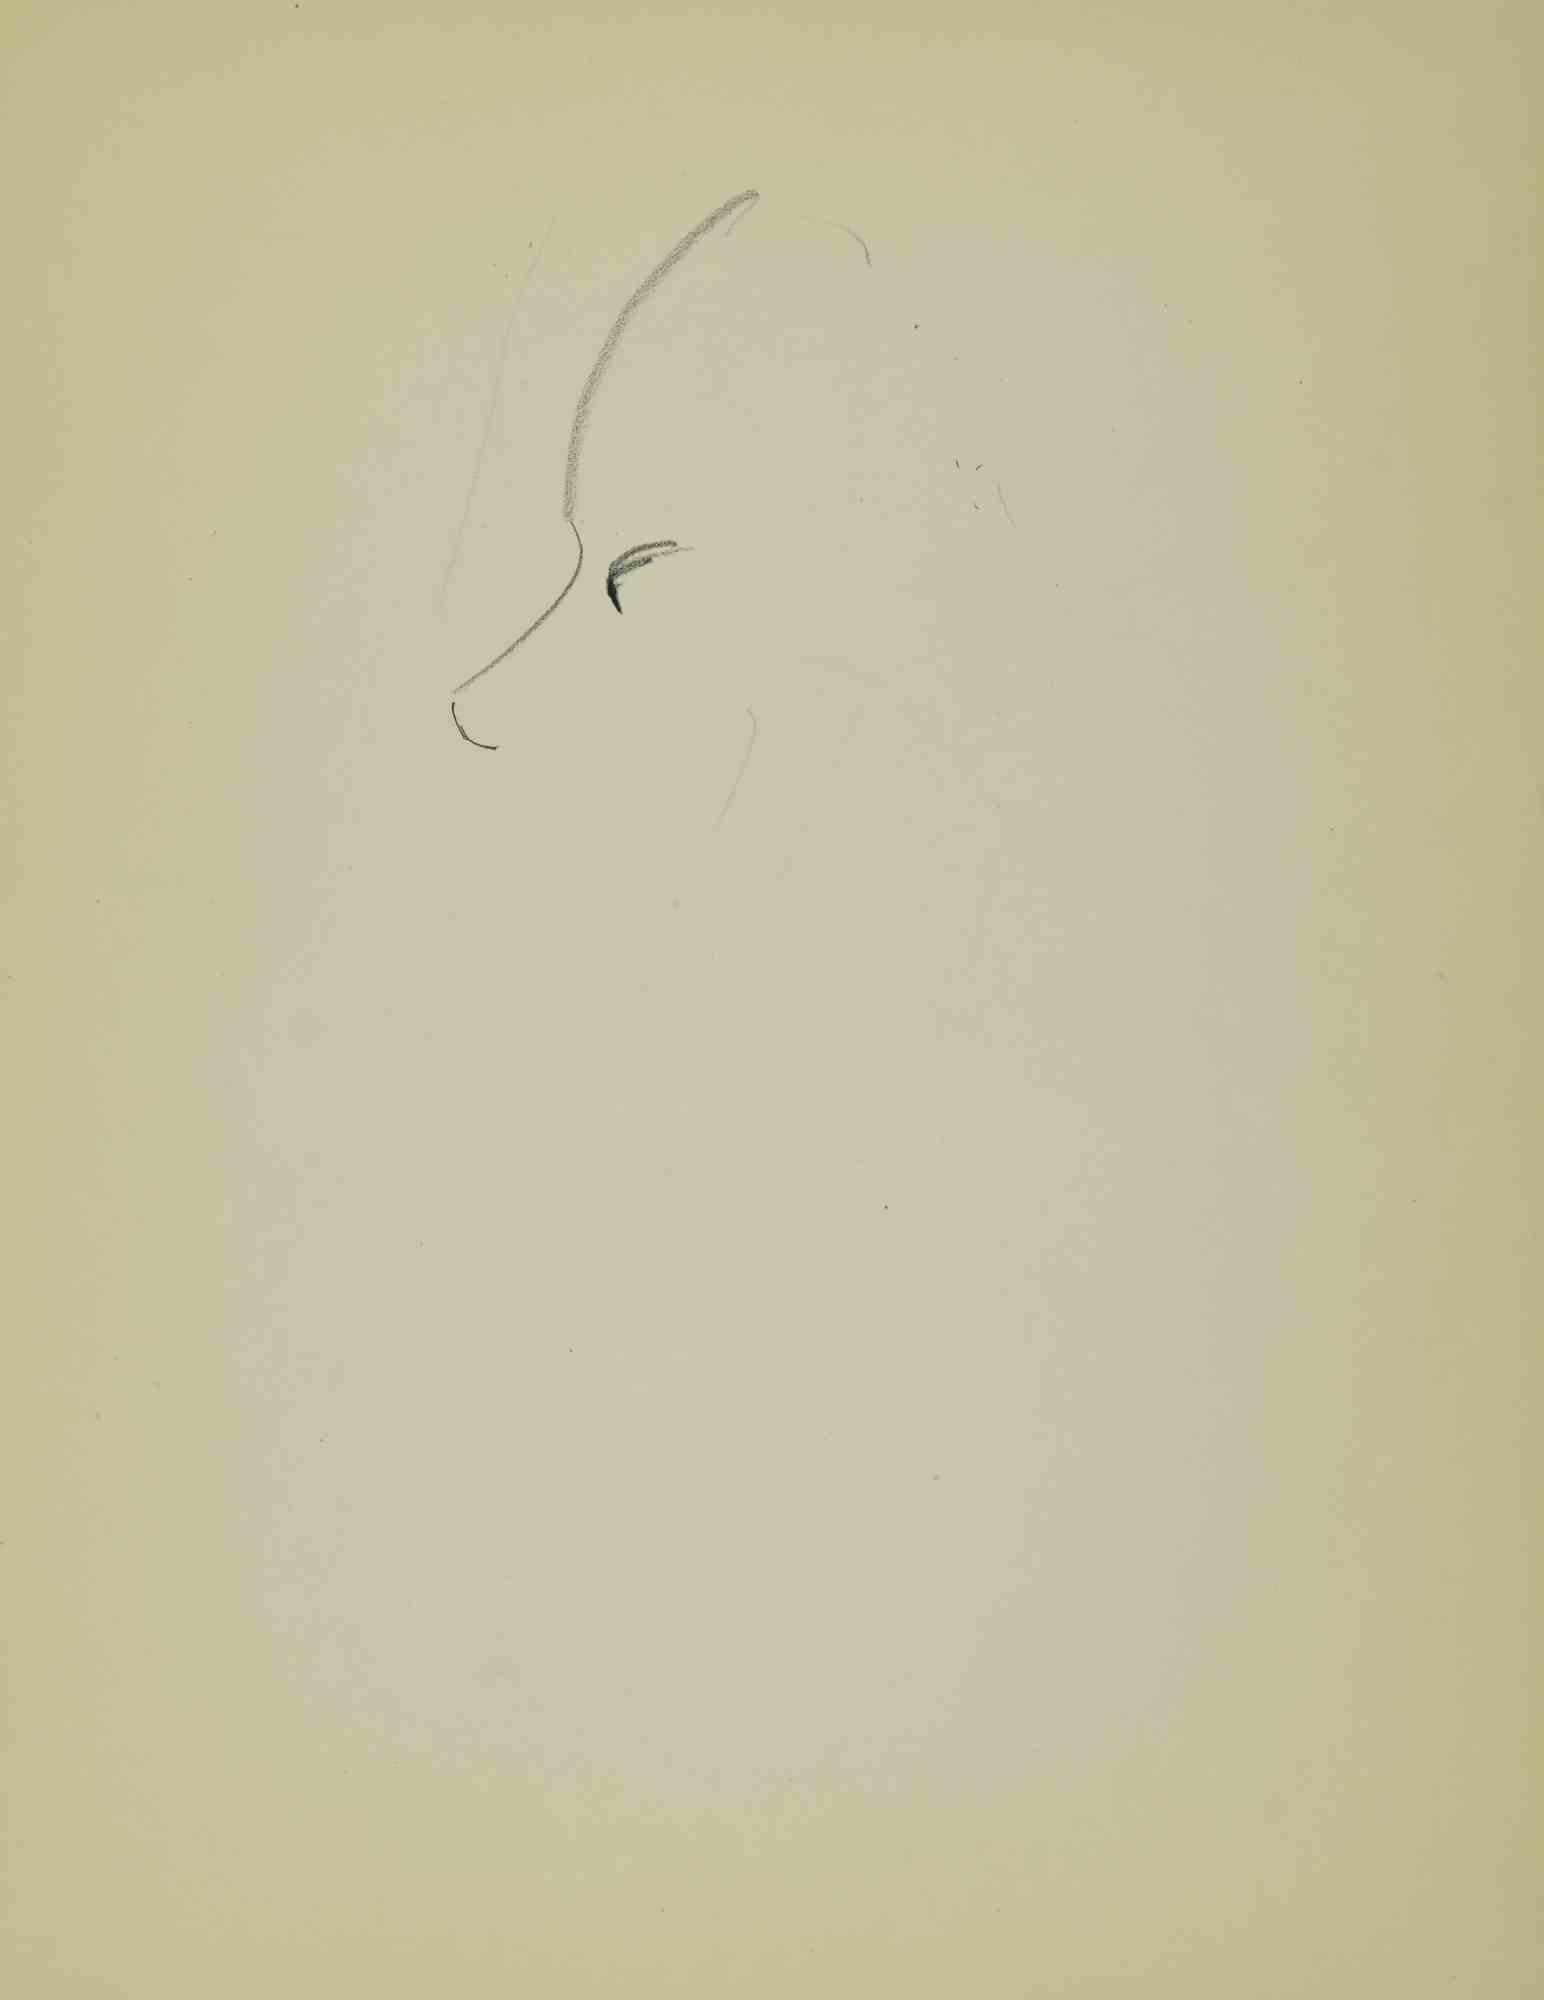 Skizze für ein Porträt ist ein  anzeichnend  Papier, das Mitte des 20. Jahrhunderts von Flor David realisiert wurde.

Gute Bedingungen.

 

Flor David (1891-1958) ):  Pseudonym von David Florence. Pastellmaler. Er war ein Schüler von Desirè Lucas.